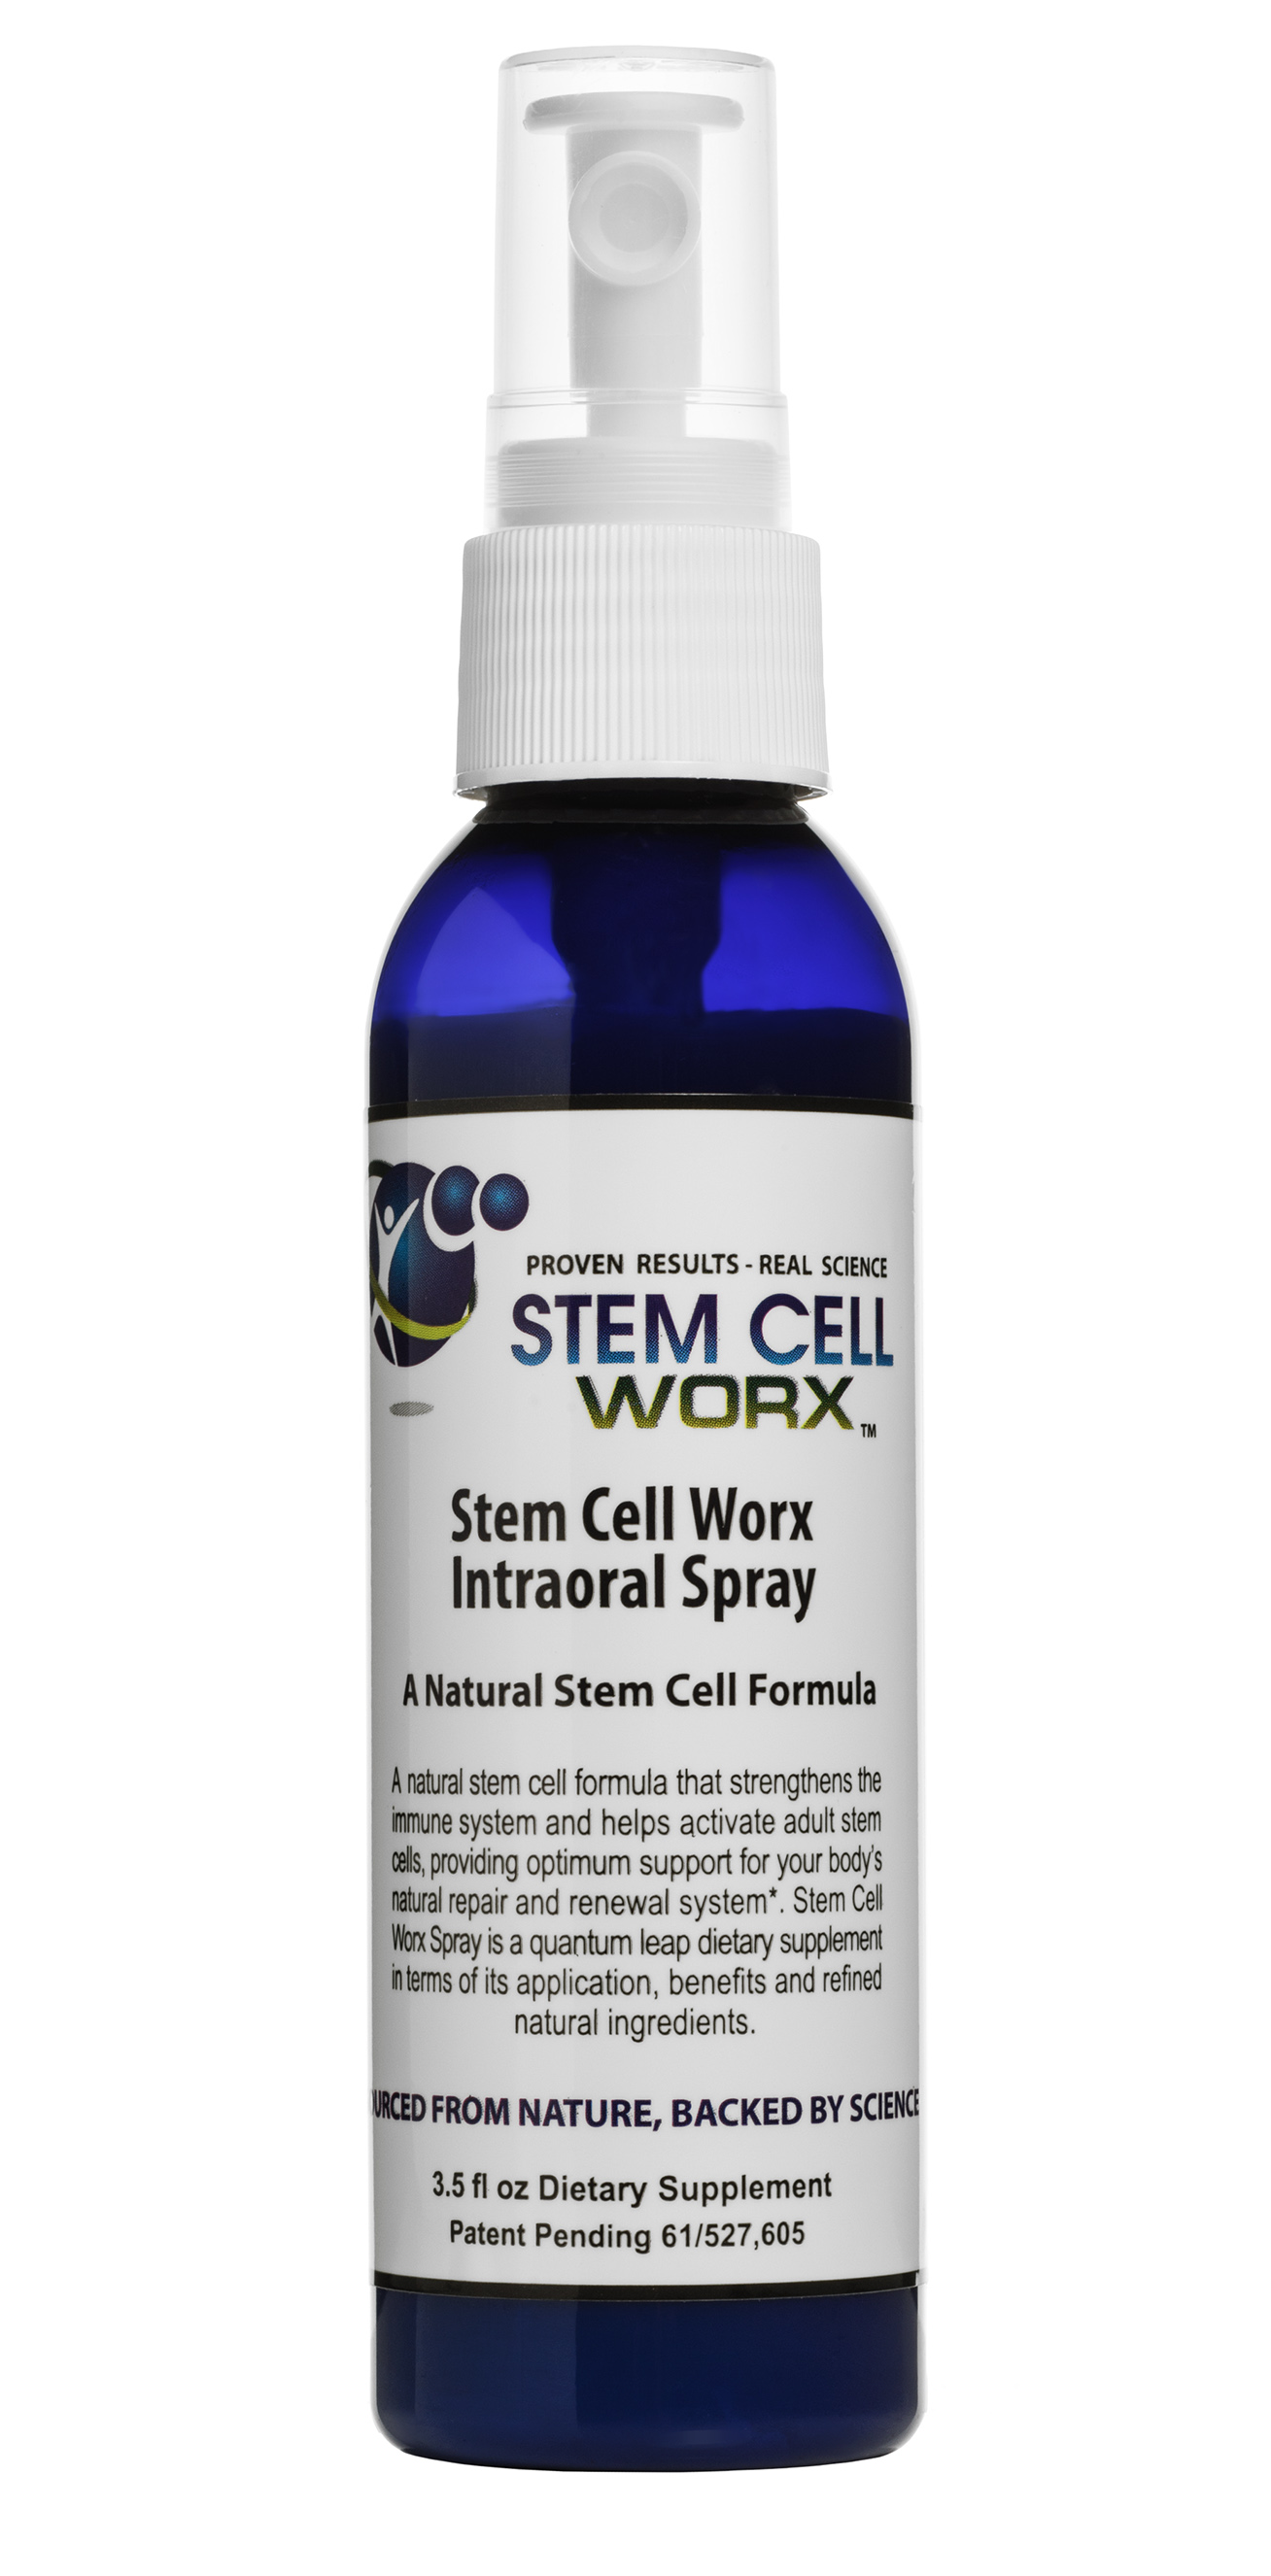 Stem Cell Worx Intraoral Spray Supplement